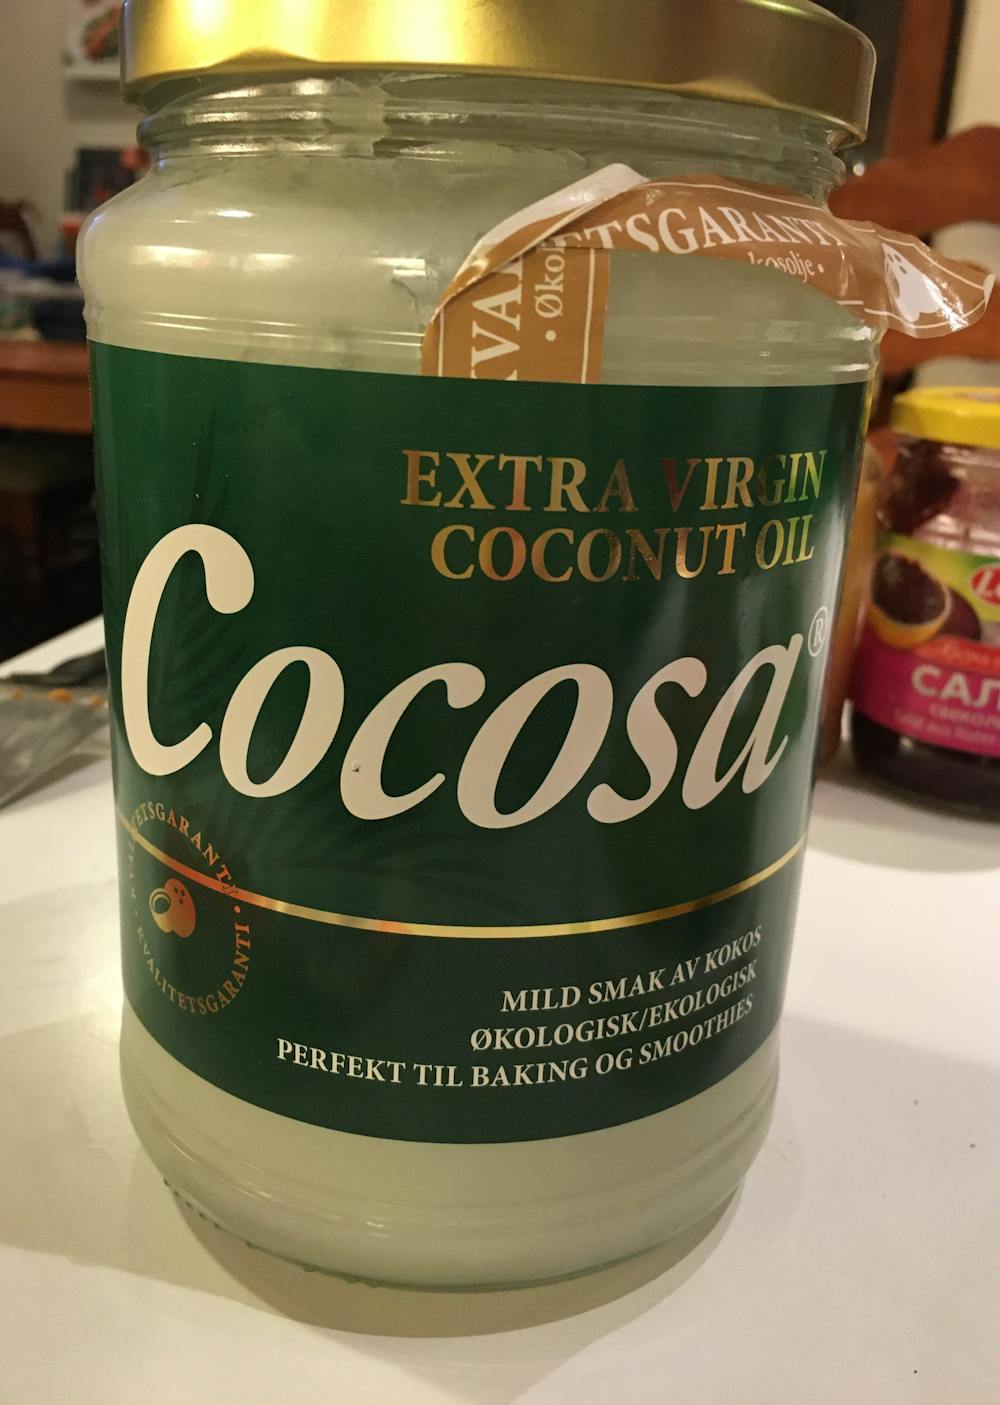 Extra virgin coconut oil, Cocosa